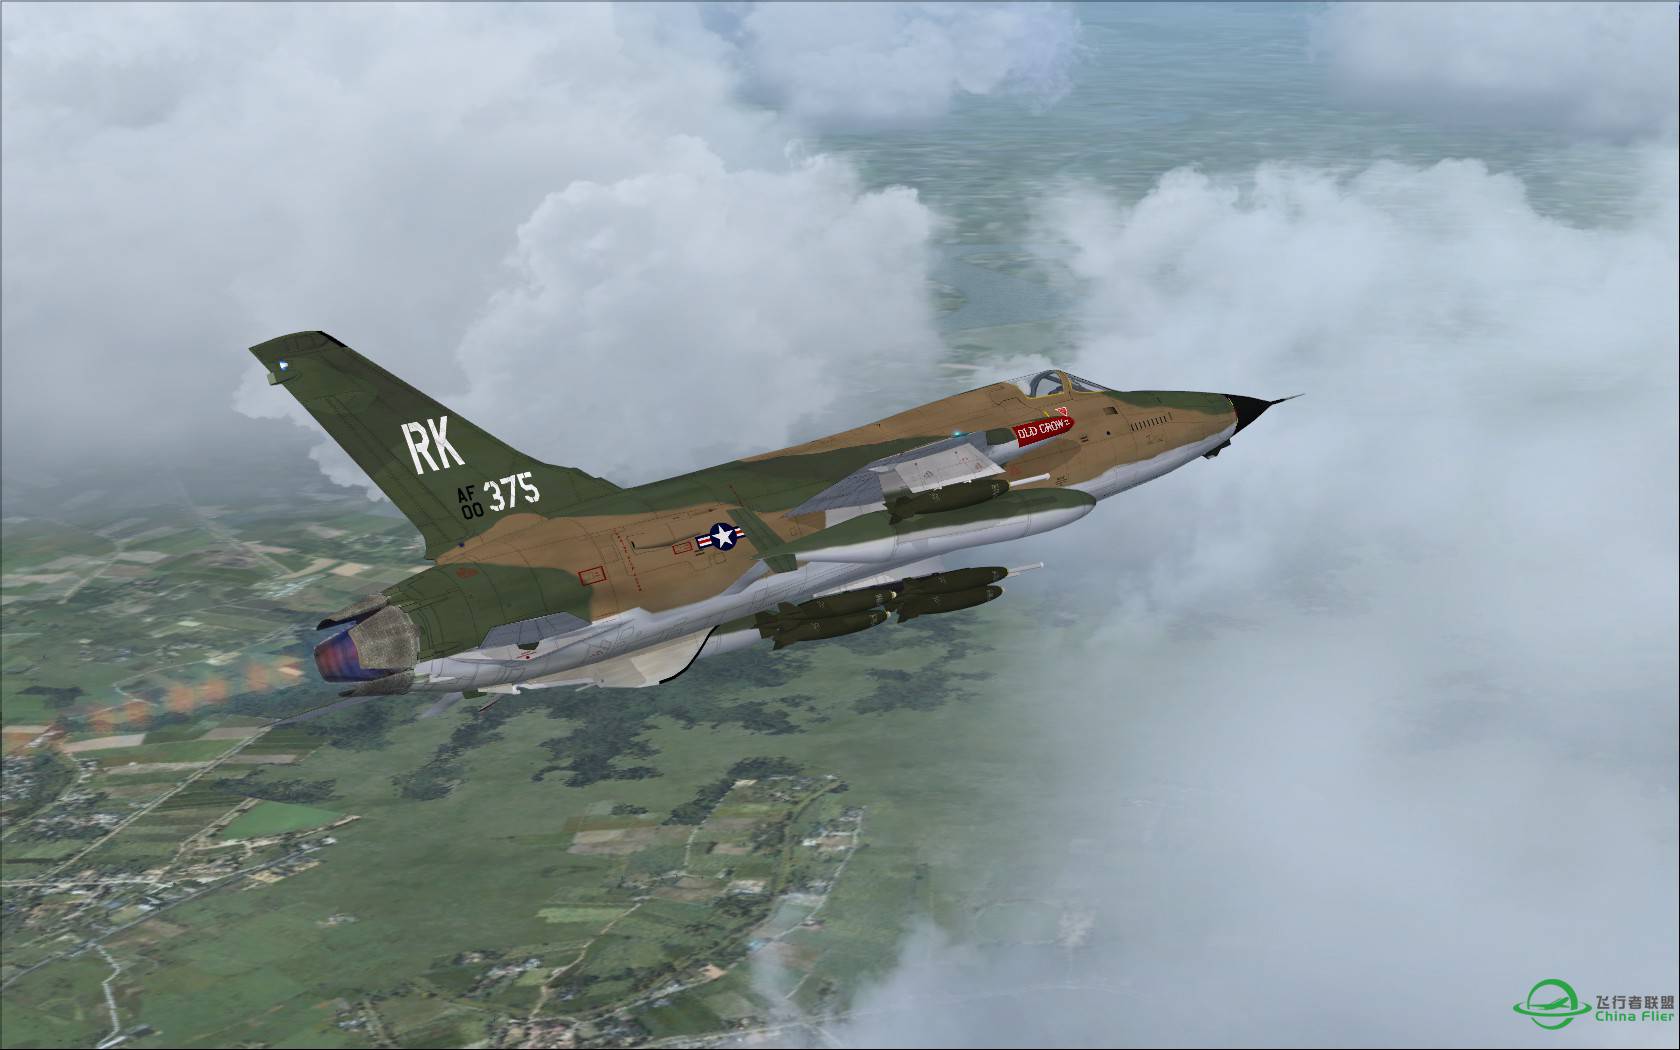 故地重游:越南内排机场起飞的F-105雷公战斗轰炸机-4371 